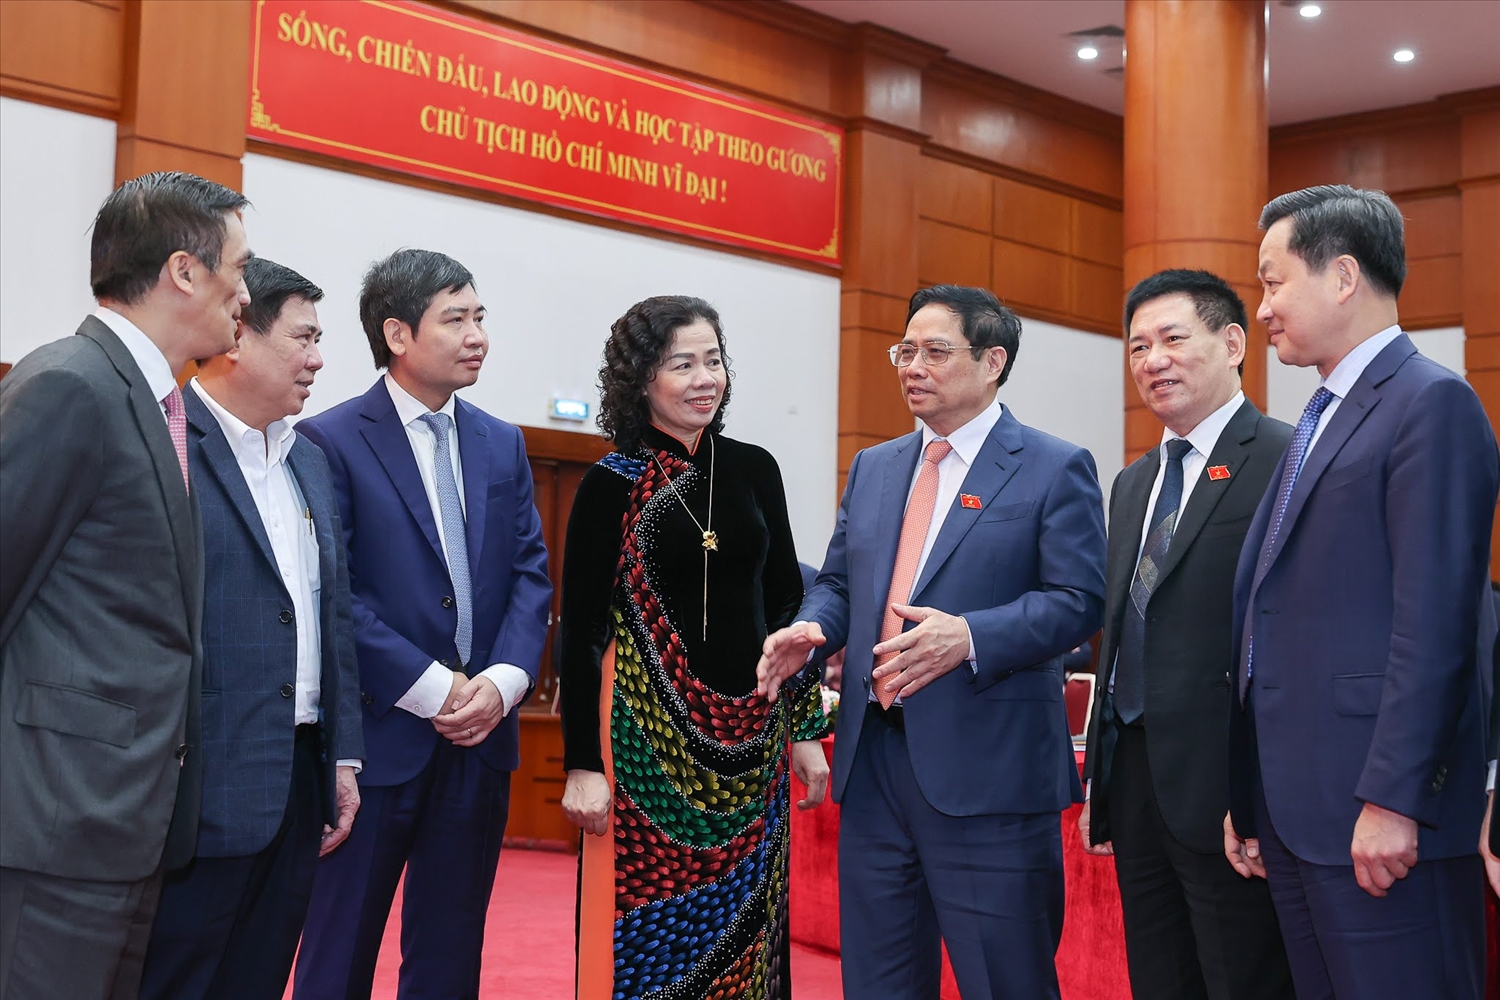 Thủ tướng Phạm Minh Chính, Phó Thủ tướng Lê Minh Khái trao đổi với lãnh đạo Bộ Tài chính. Ảnh: VGP/Nhật Bắc